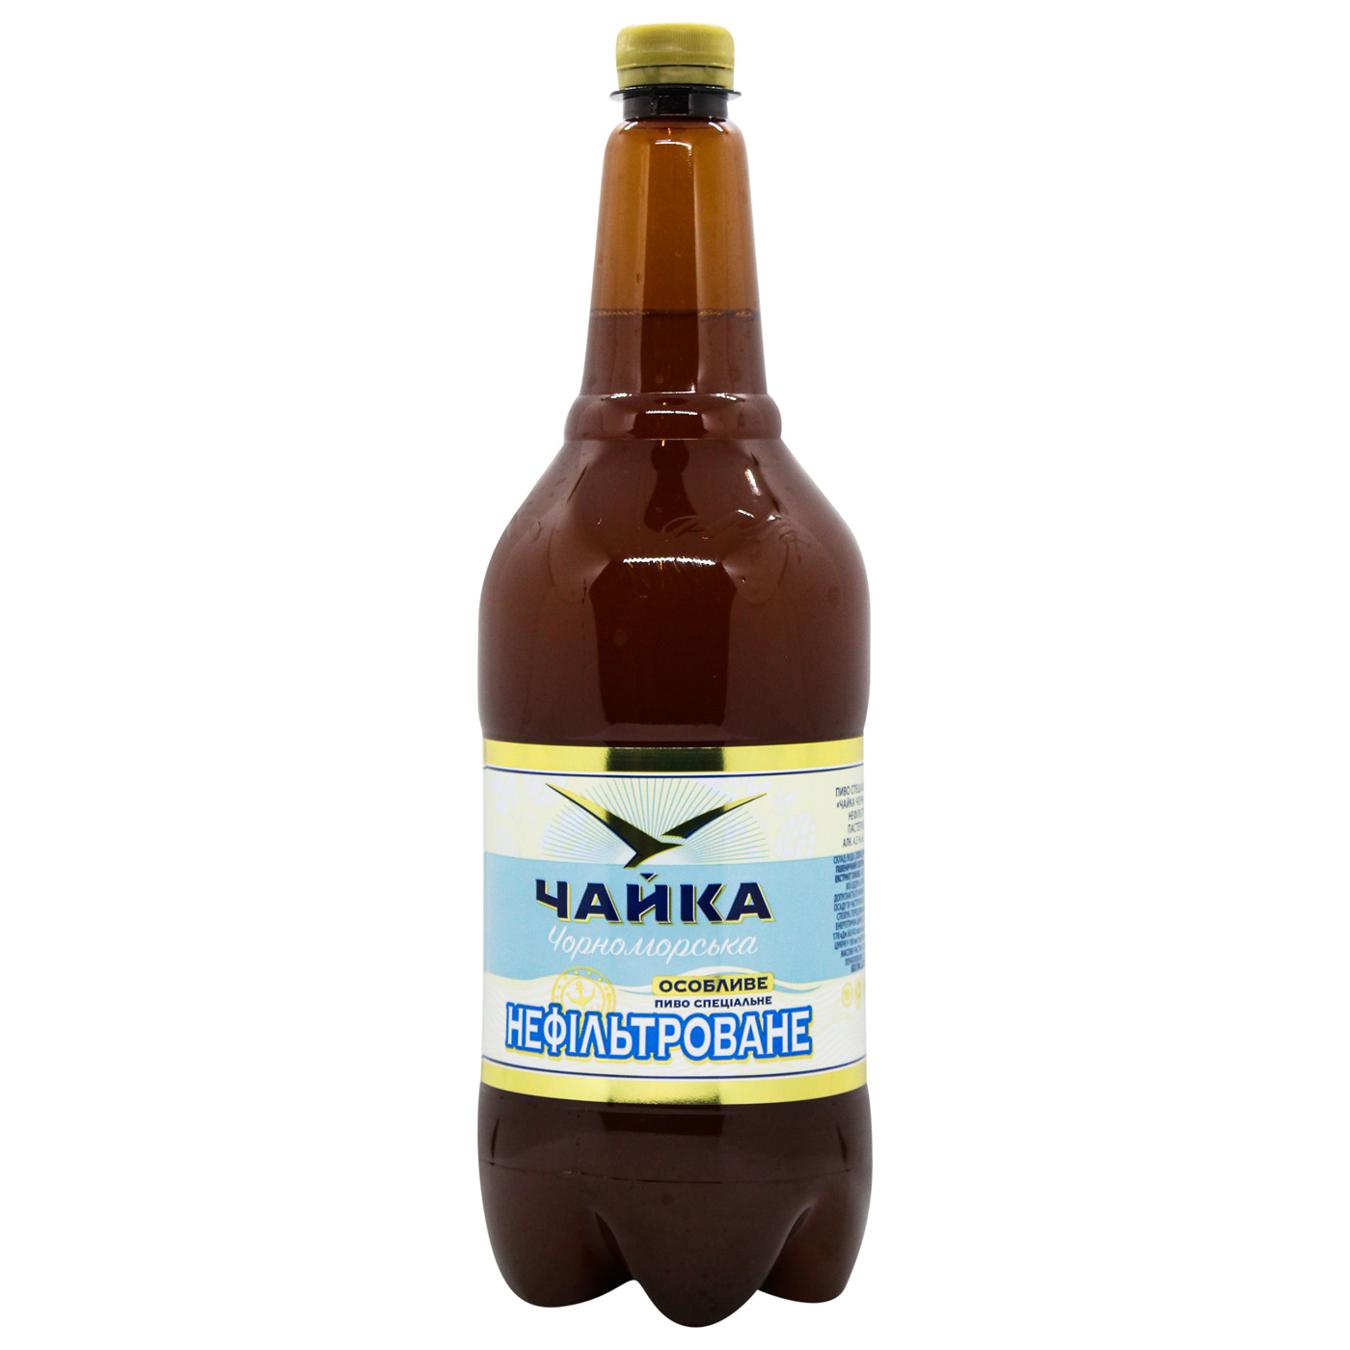 Пиво світле нефільтроване Чайка Чорноморська 4,8% 1,45л пластикова пляшка